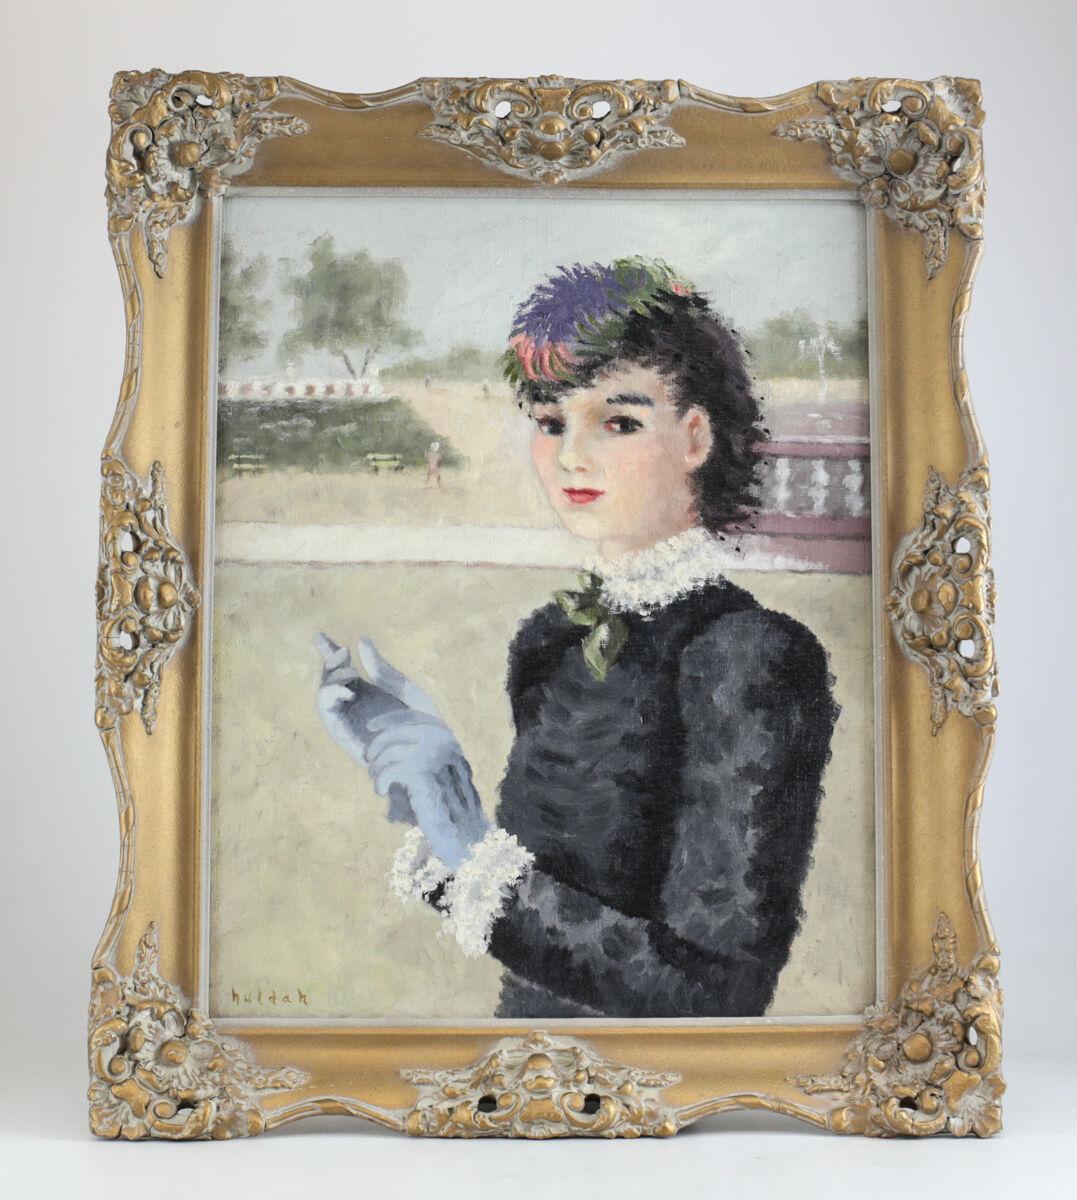 Ensemble de Cherry Jeffe Huldah huile sur toile peinture vierge

Portrait d'une femme costumée du début du 20e siècle avec un couvre-chef à plumes, une robe à volants noire et blanche, une cravate verte et des gants bleu clair. Cadre en bois doré